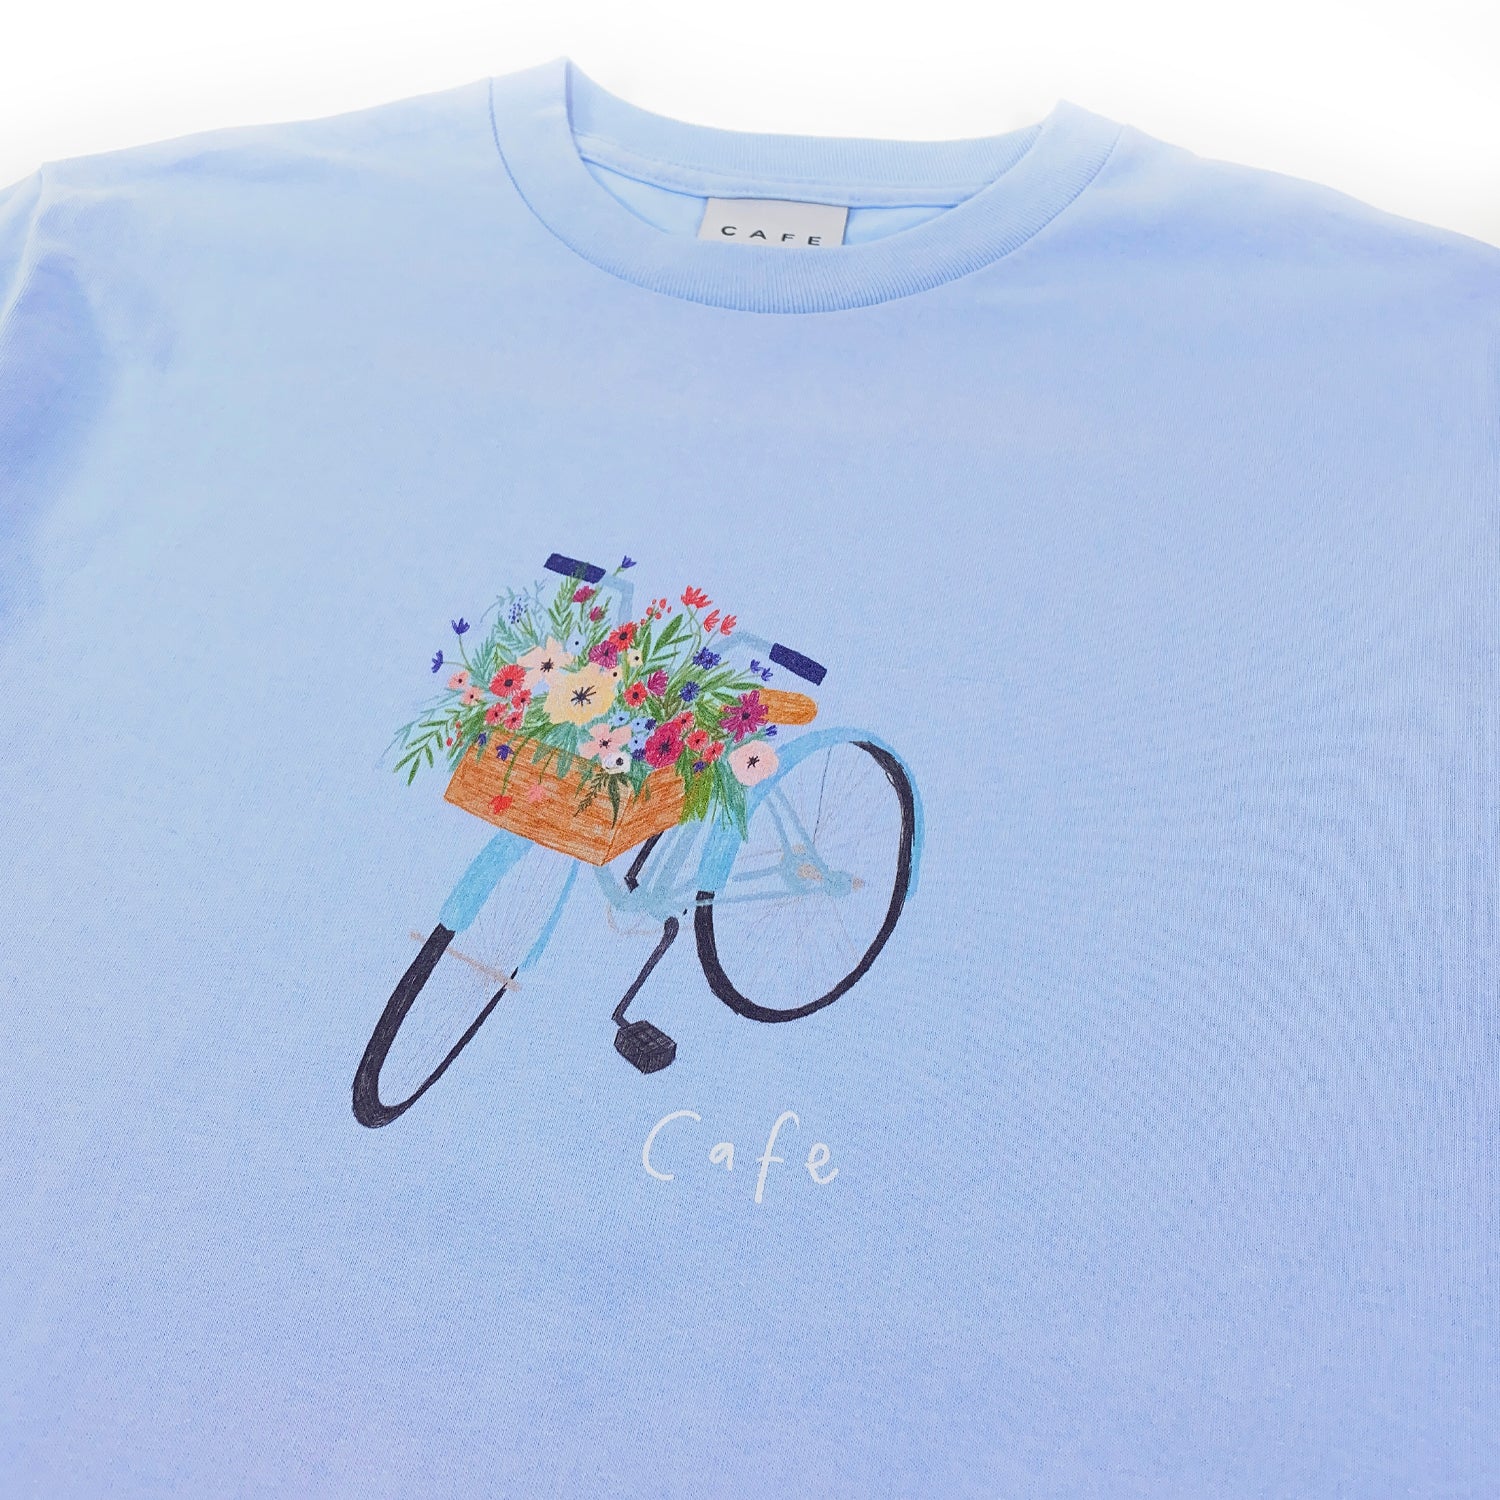 Skateboard Cafe - Flower Basket T Shirt - Powder Blue - Prime Delux Store